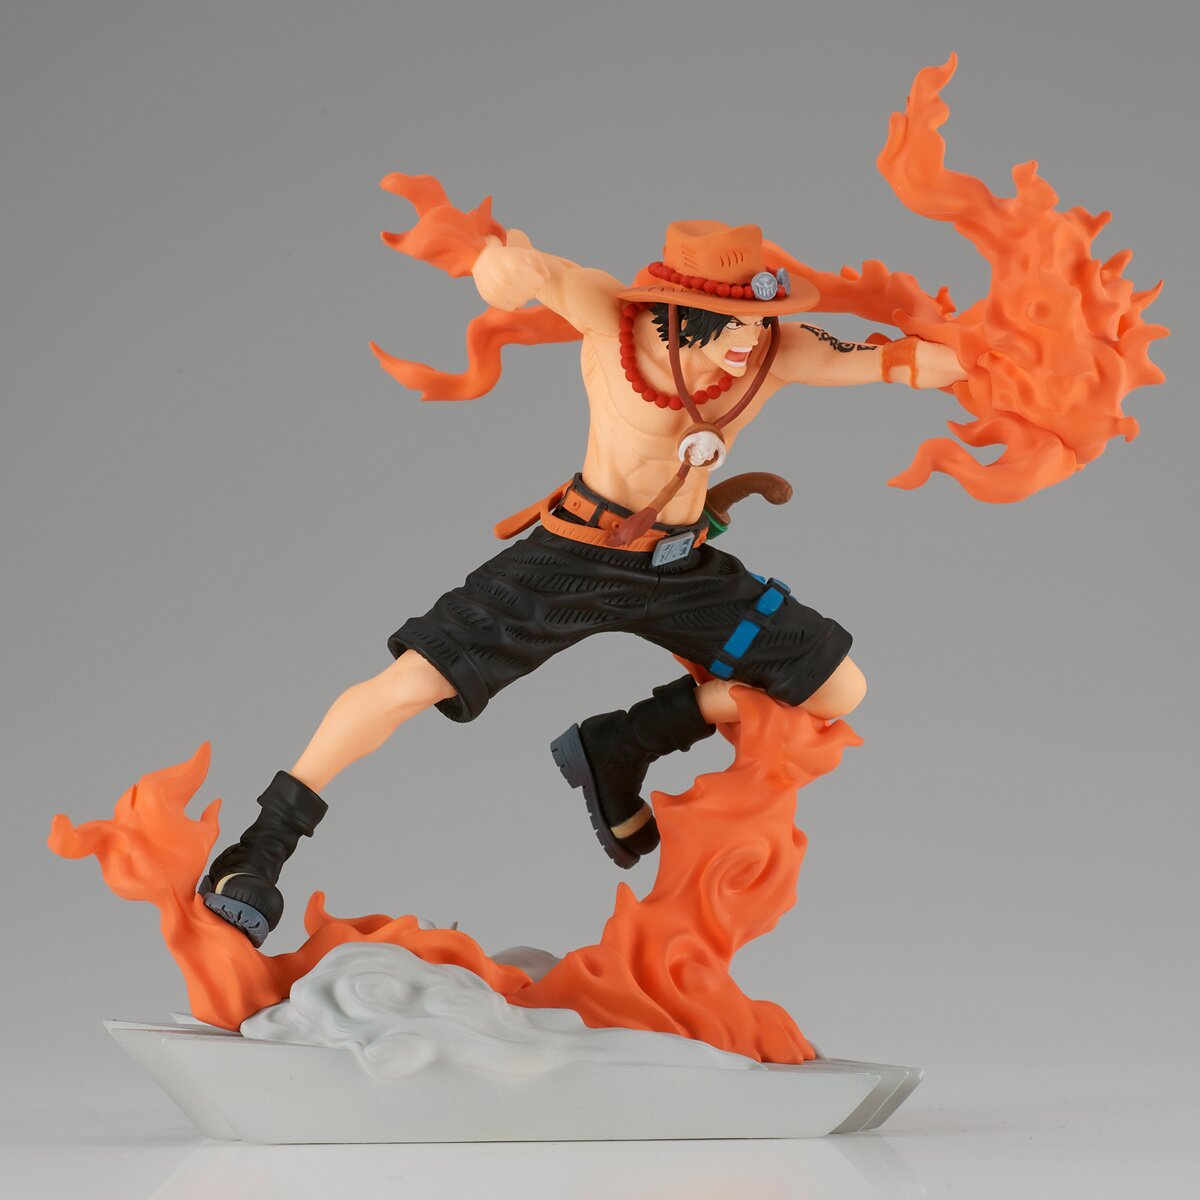 One Piece - Figurine Portgas D. Ace